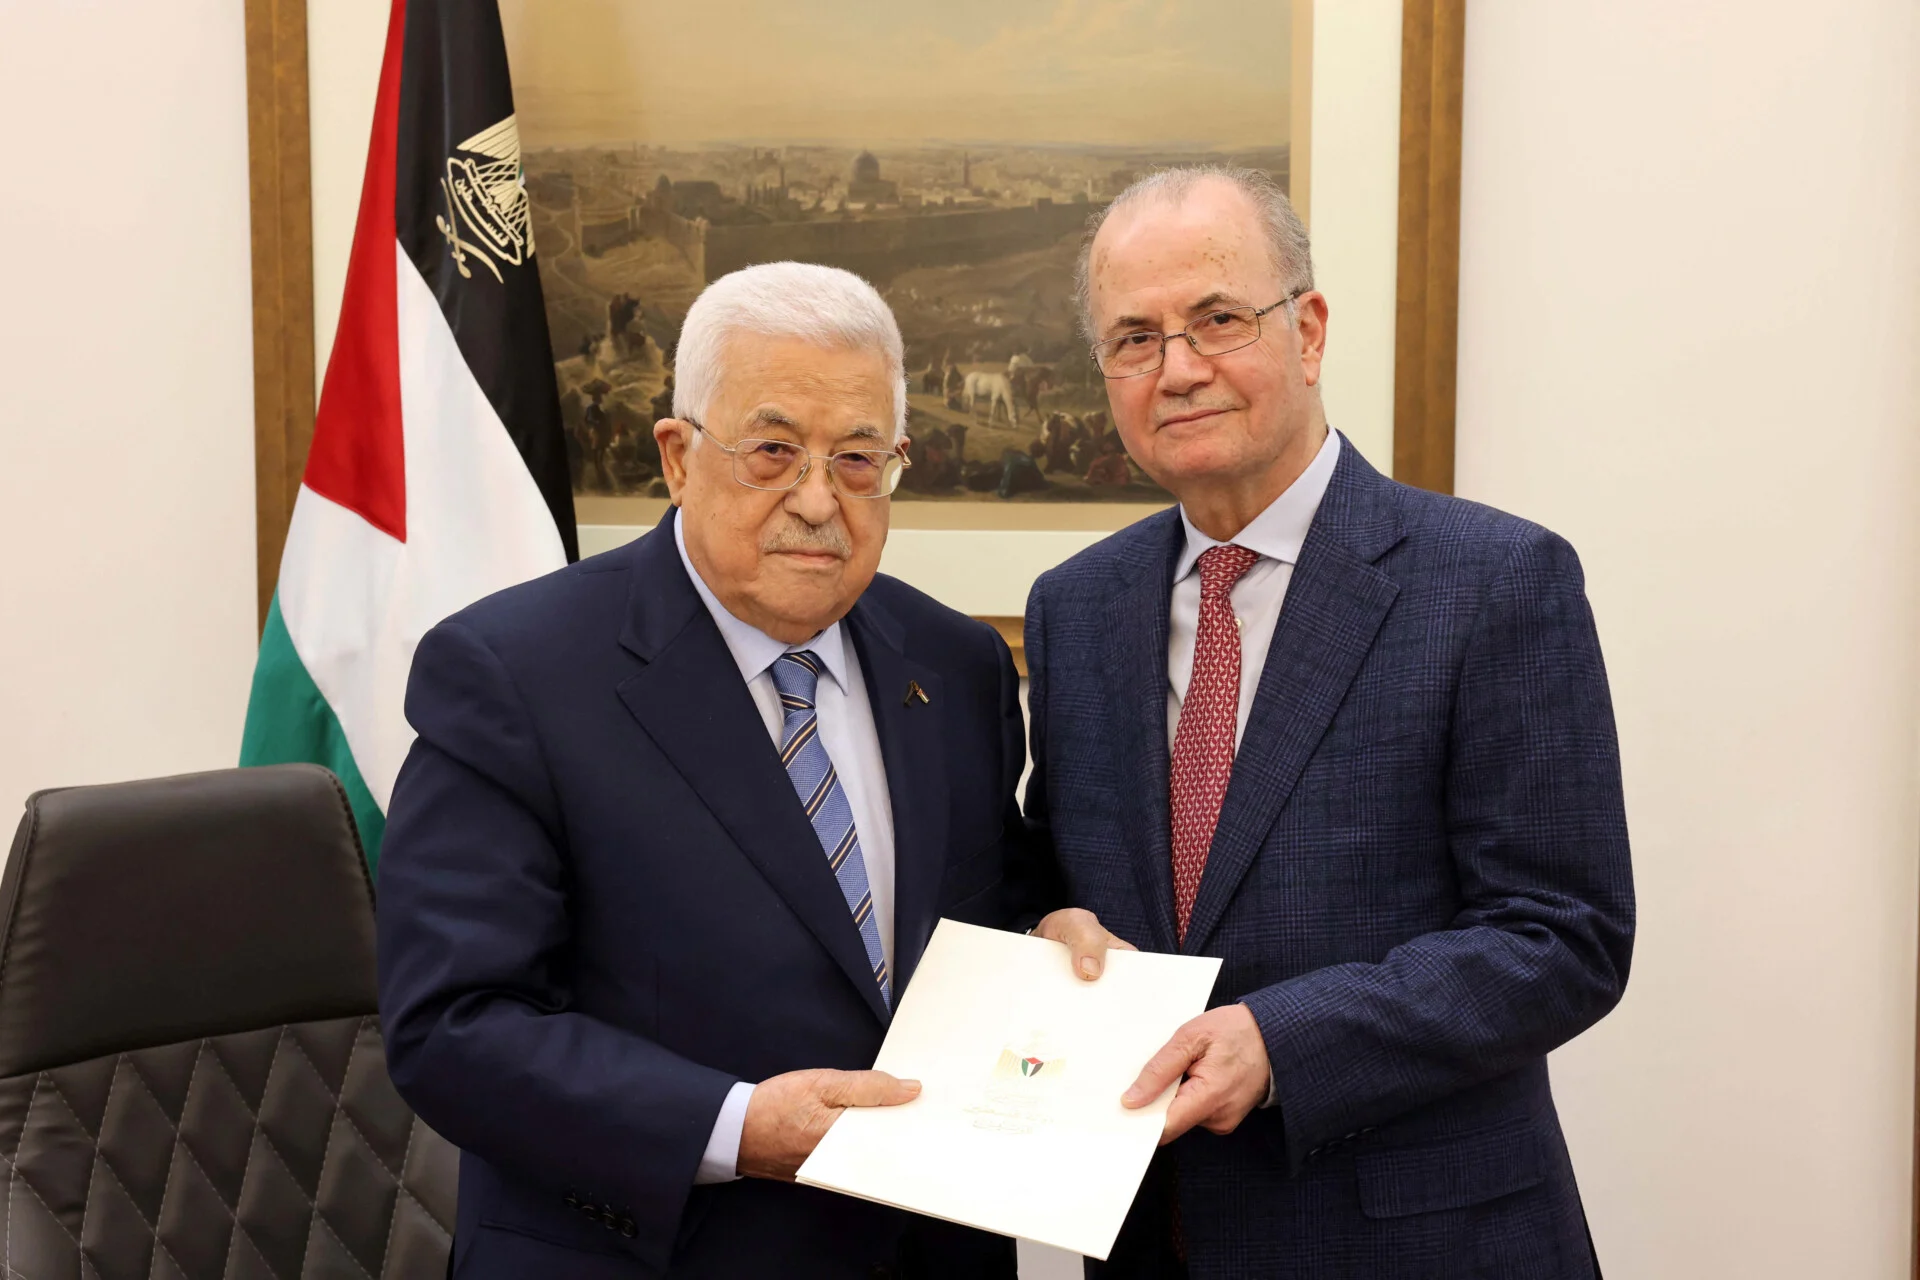 Χαμάς: Επικρίνει τον διορισμό του νέου πρωθυπουργού της Παλαιστινιακής Αρχής